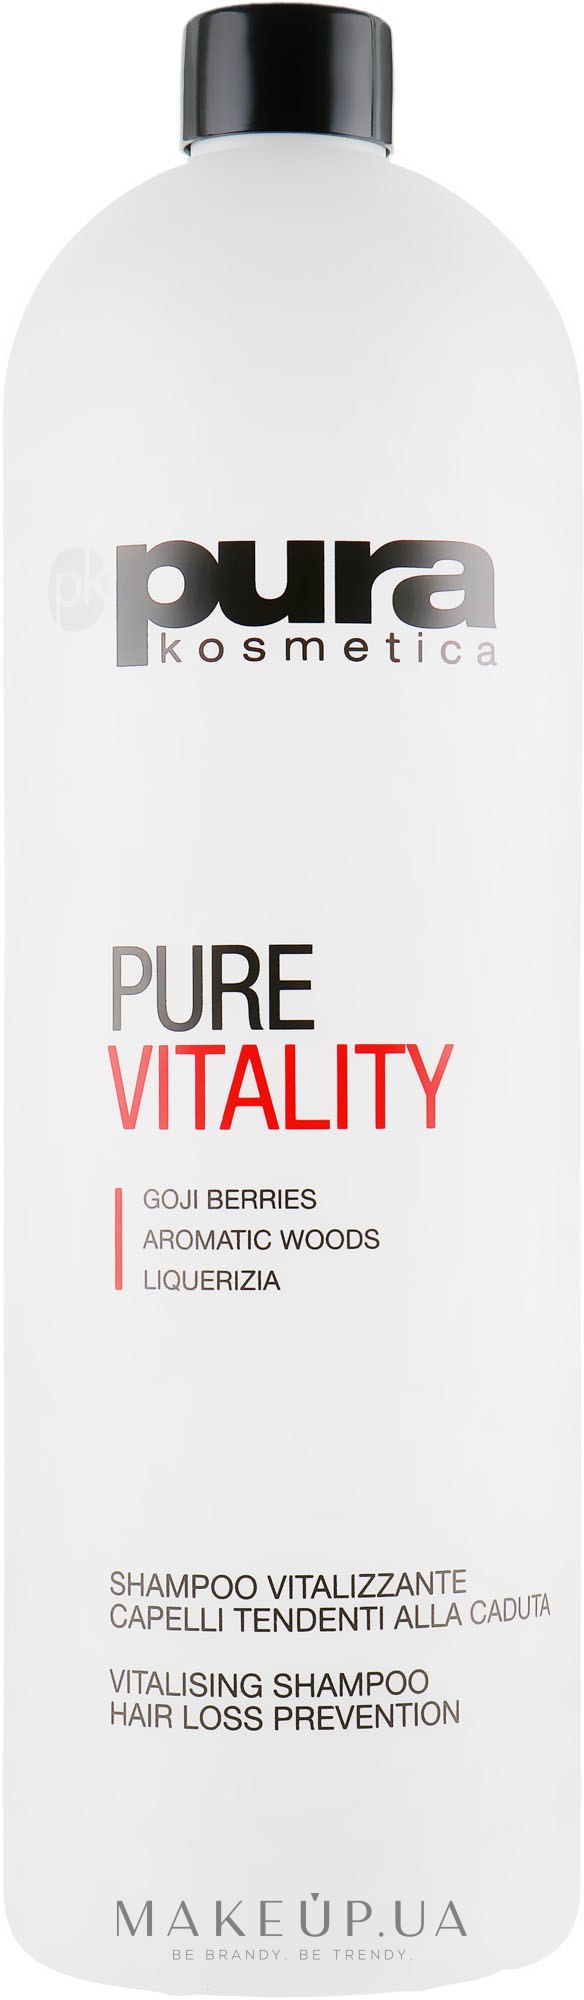 Шампунь проти випадіння волосся - Pura Kosmetica Pure Vitality Shampoo — фото 1000ml